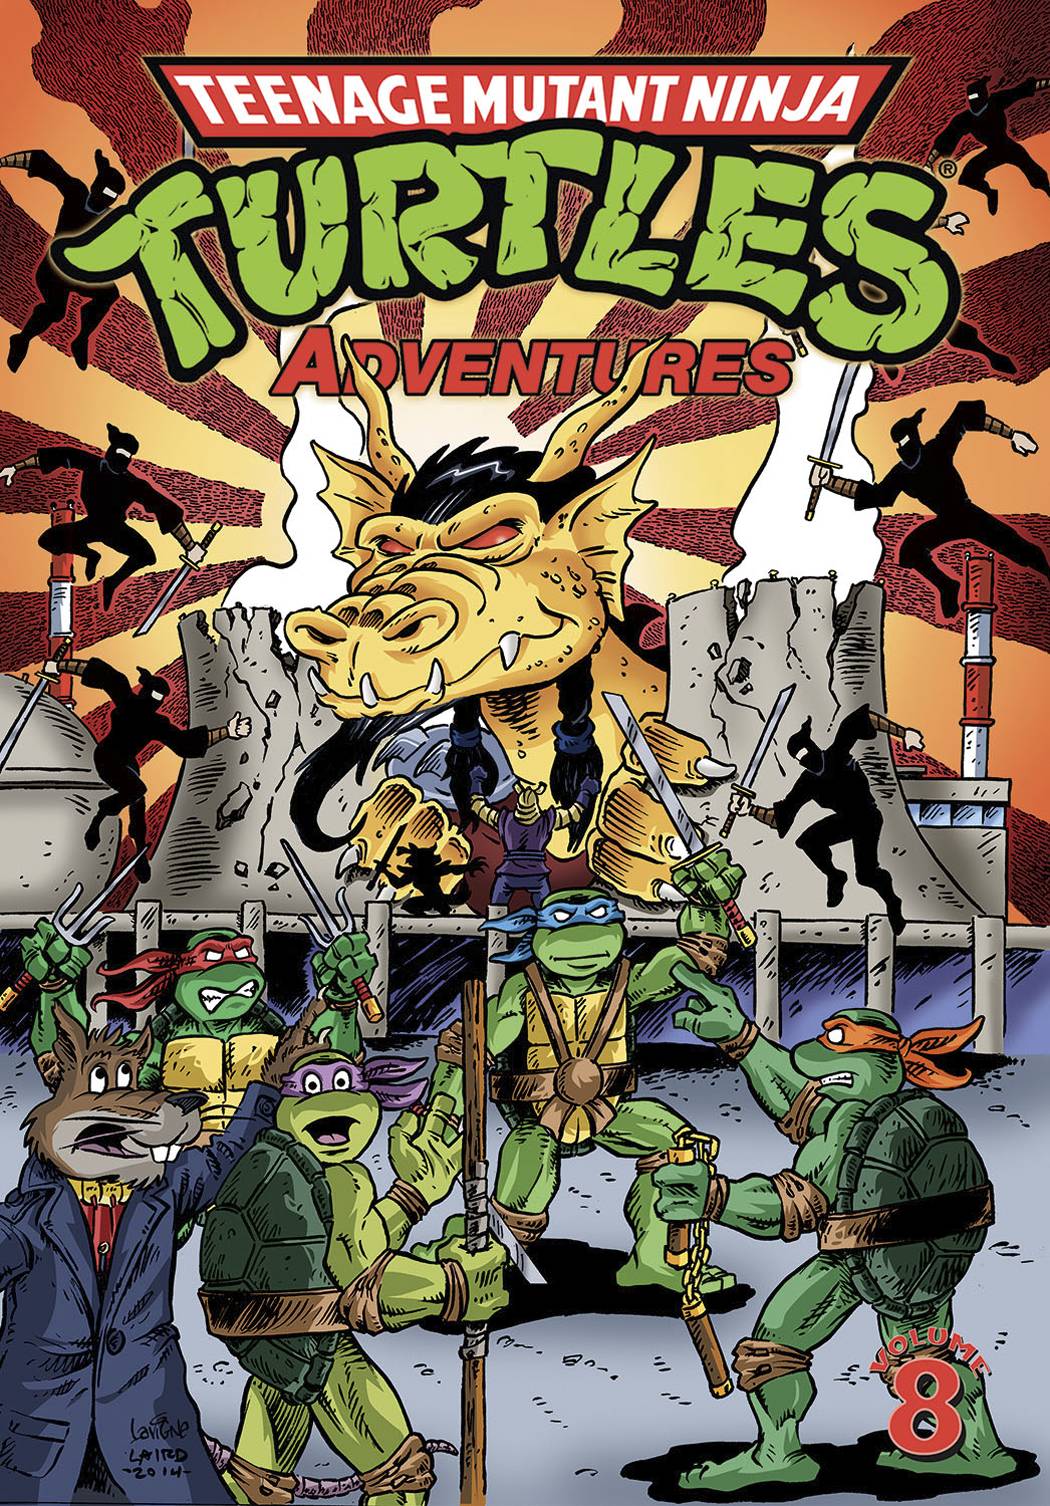 Teenage Mutant Ninja Turtles Adventures Graphic Novel Volume 8